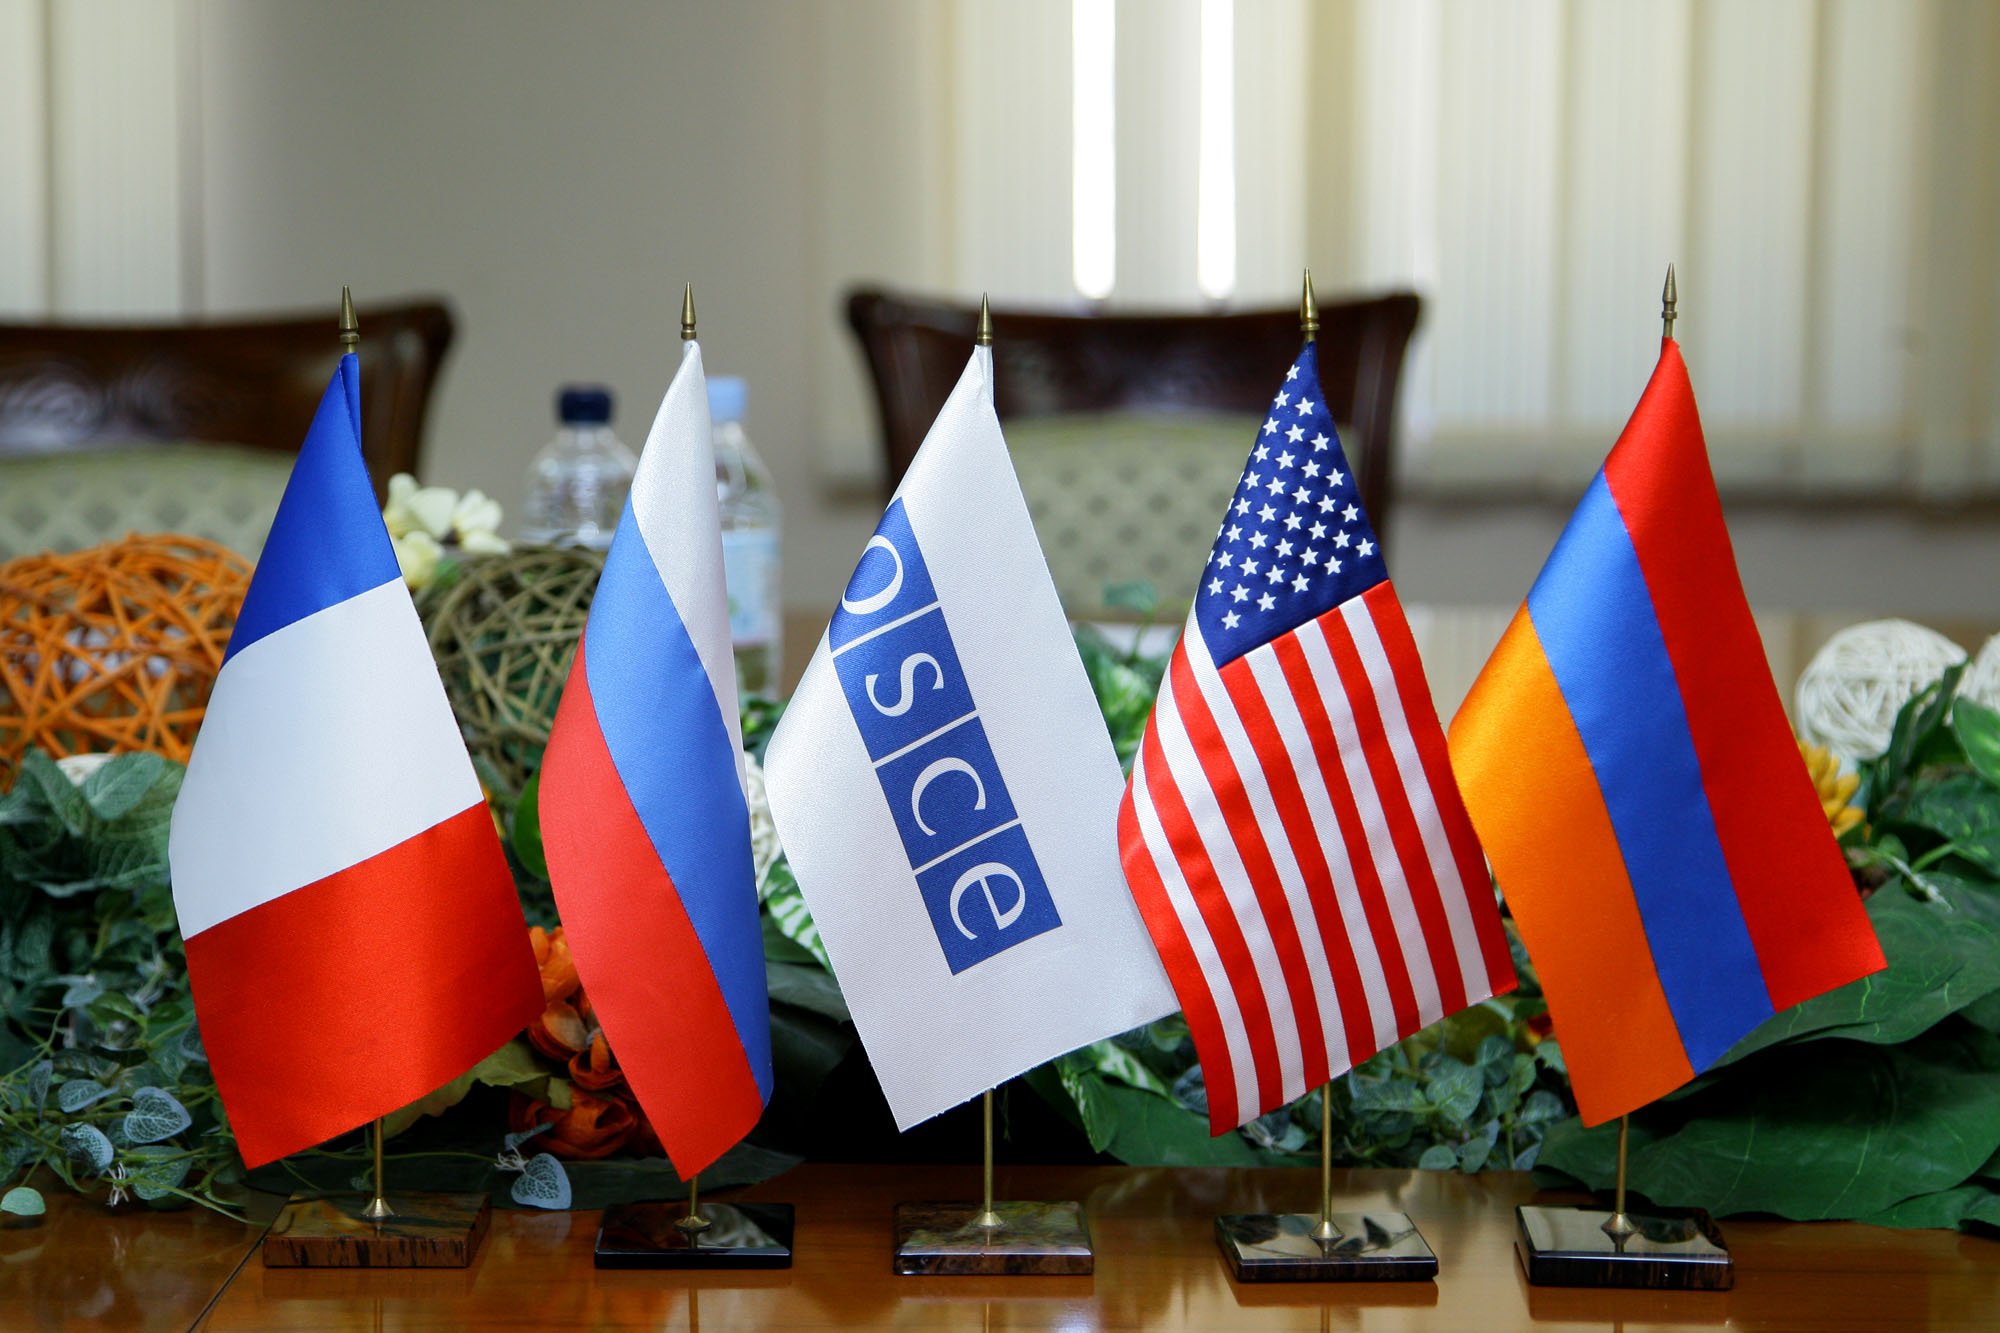 ԱՄՆ-ը պատրաստ է նպաստել Հայաստանի և Ադրբեջանի միջև երկարաժամկետ քաղաքական կարգավորմանը. ԵԱՀԿ-ում ԱՄՆ առաքելություն